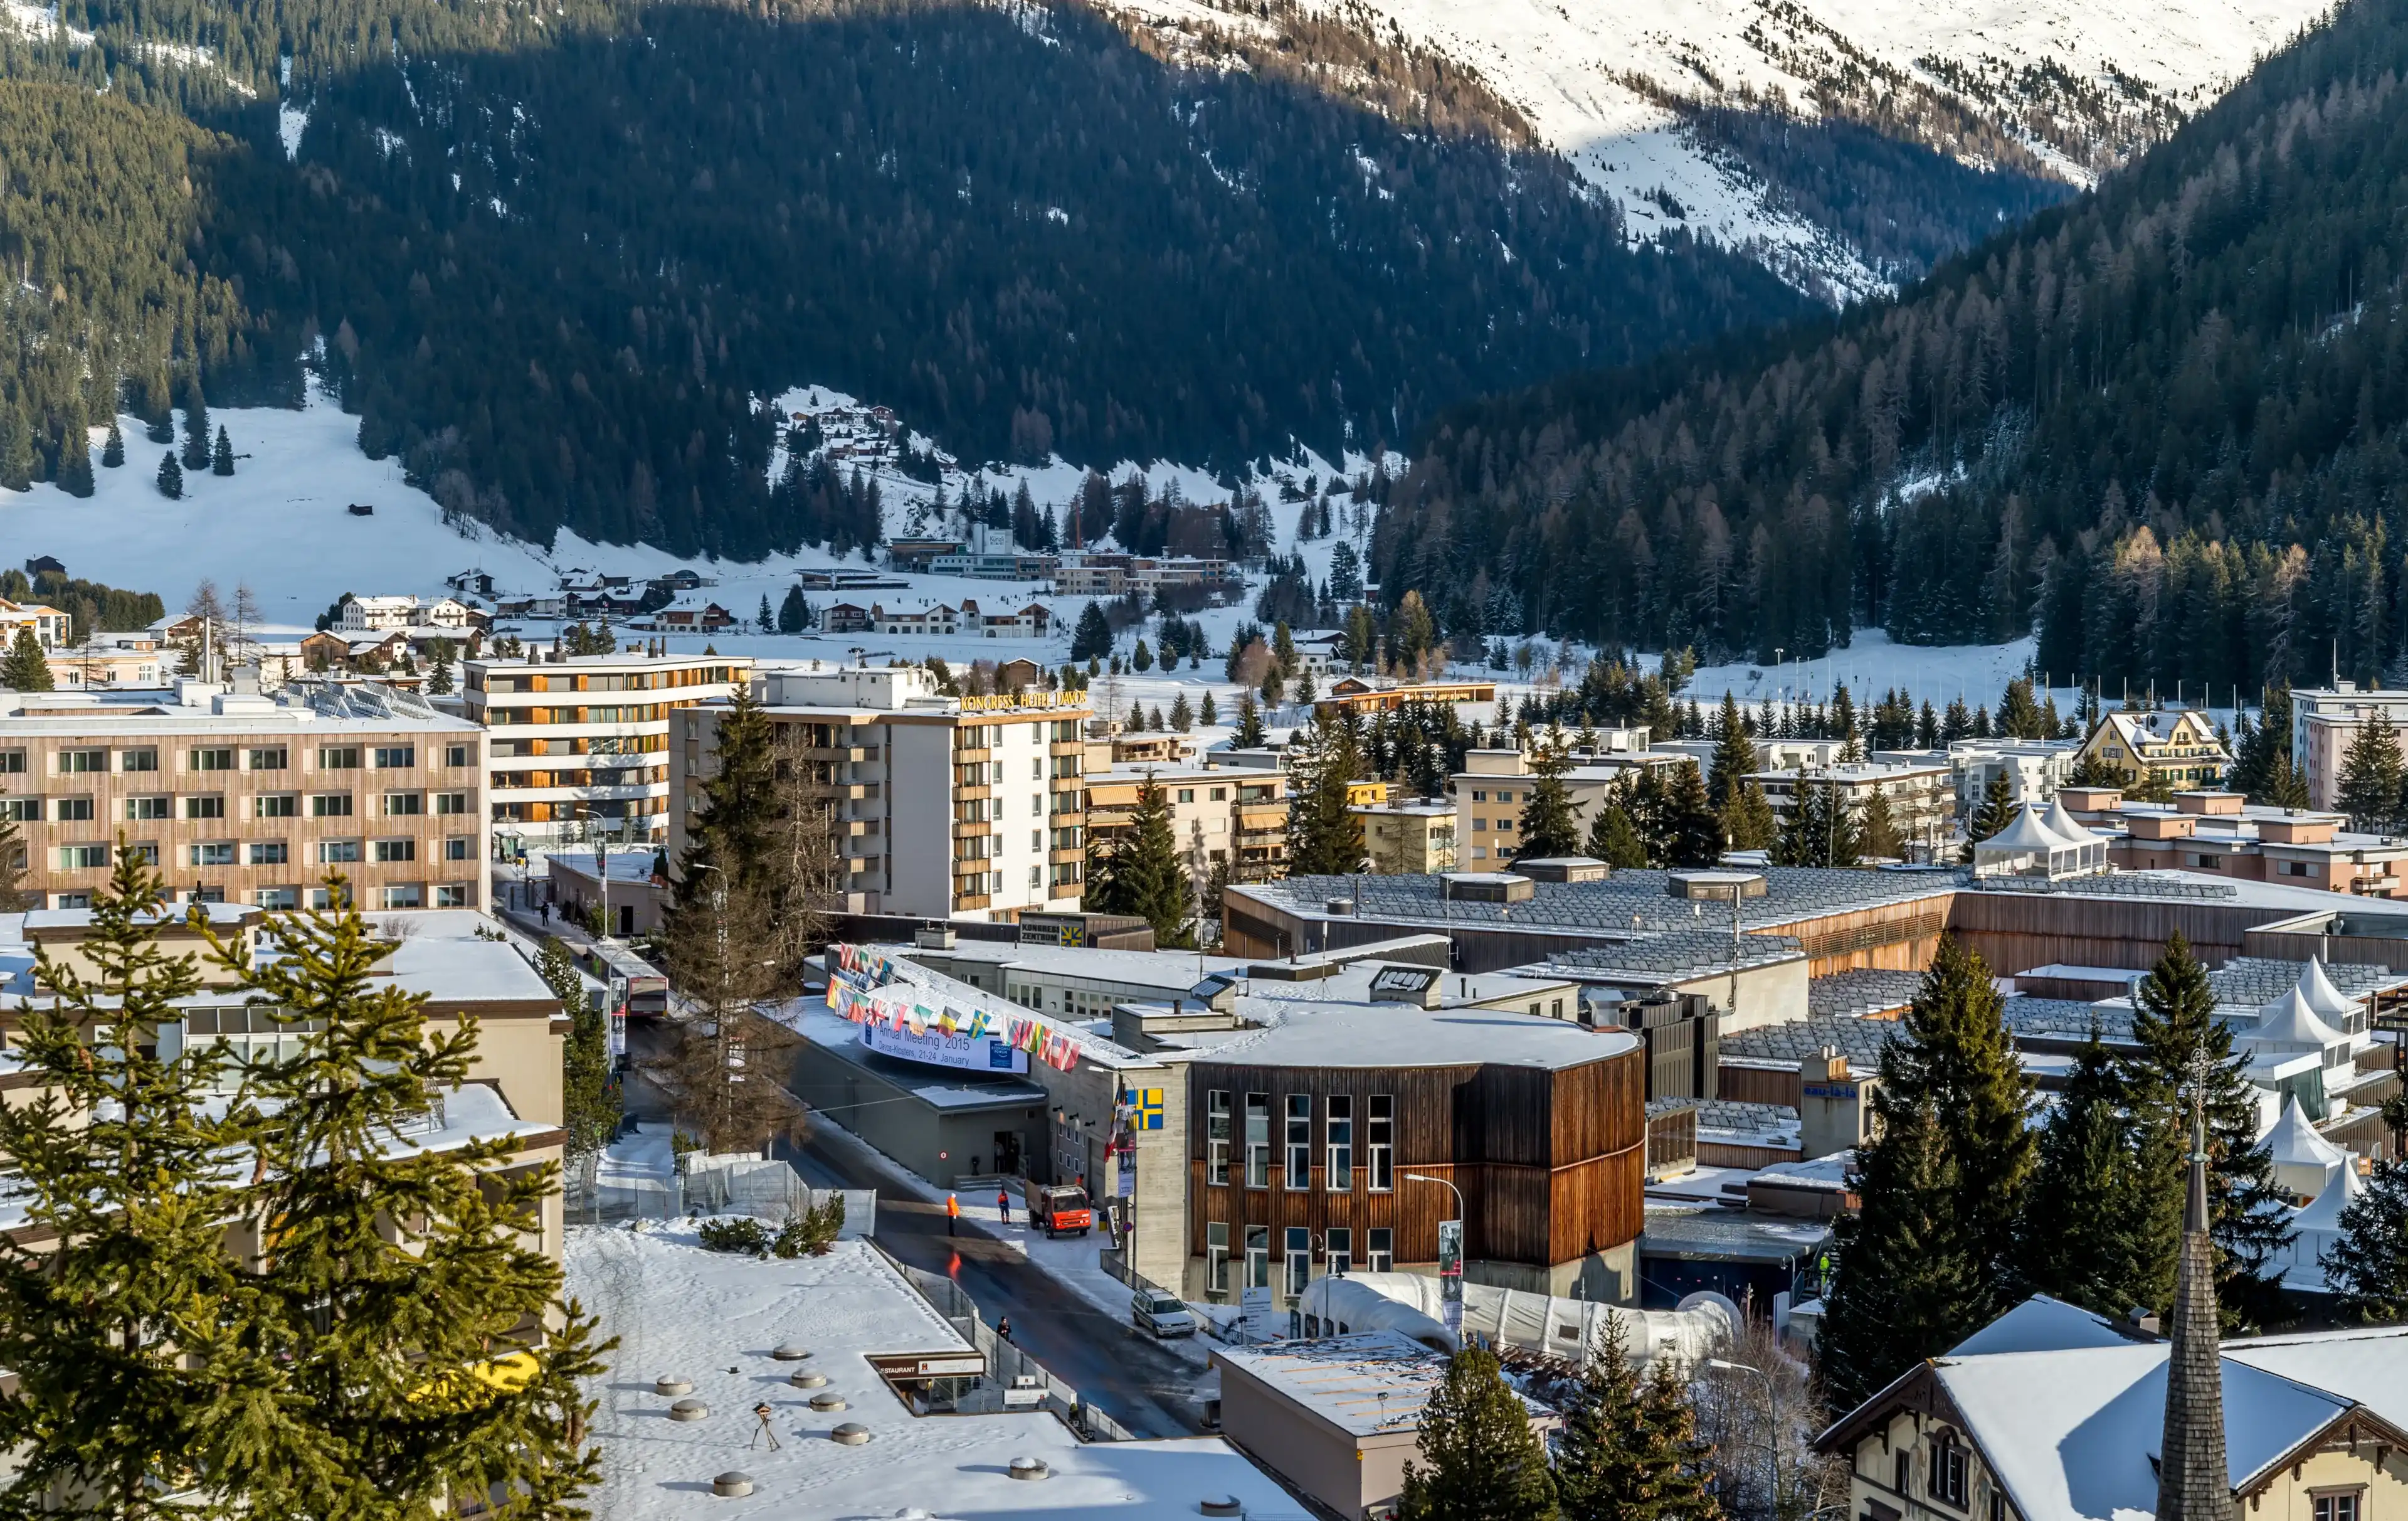 Best Davos hotels. Cheap hotels in Davos, Switzerland